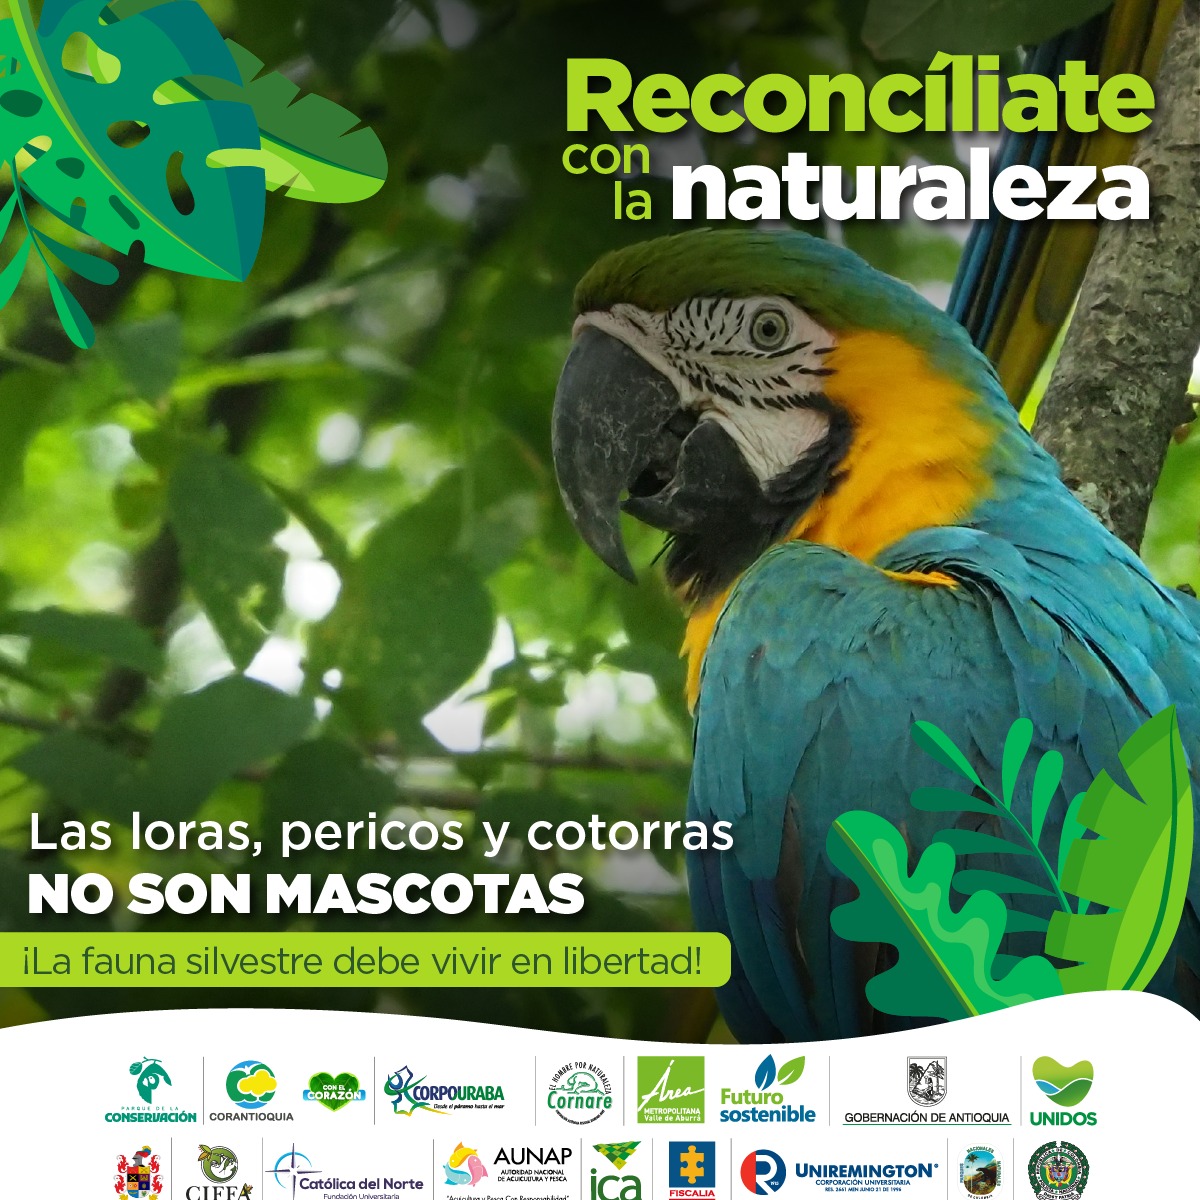 Durante esta #SemanaSanta #ReconcíliateConLaNaturaleza

No a la comercialización, tráfico y consumo de animales silvestres🐢🦎🐒🐍.
@ASOCARS